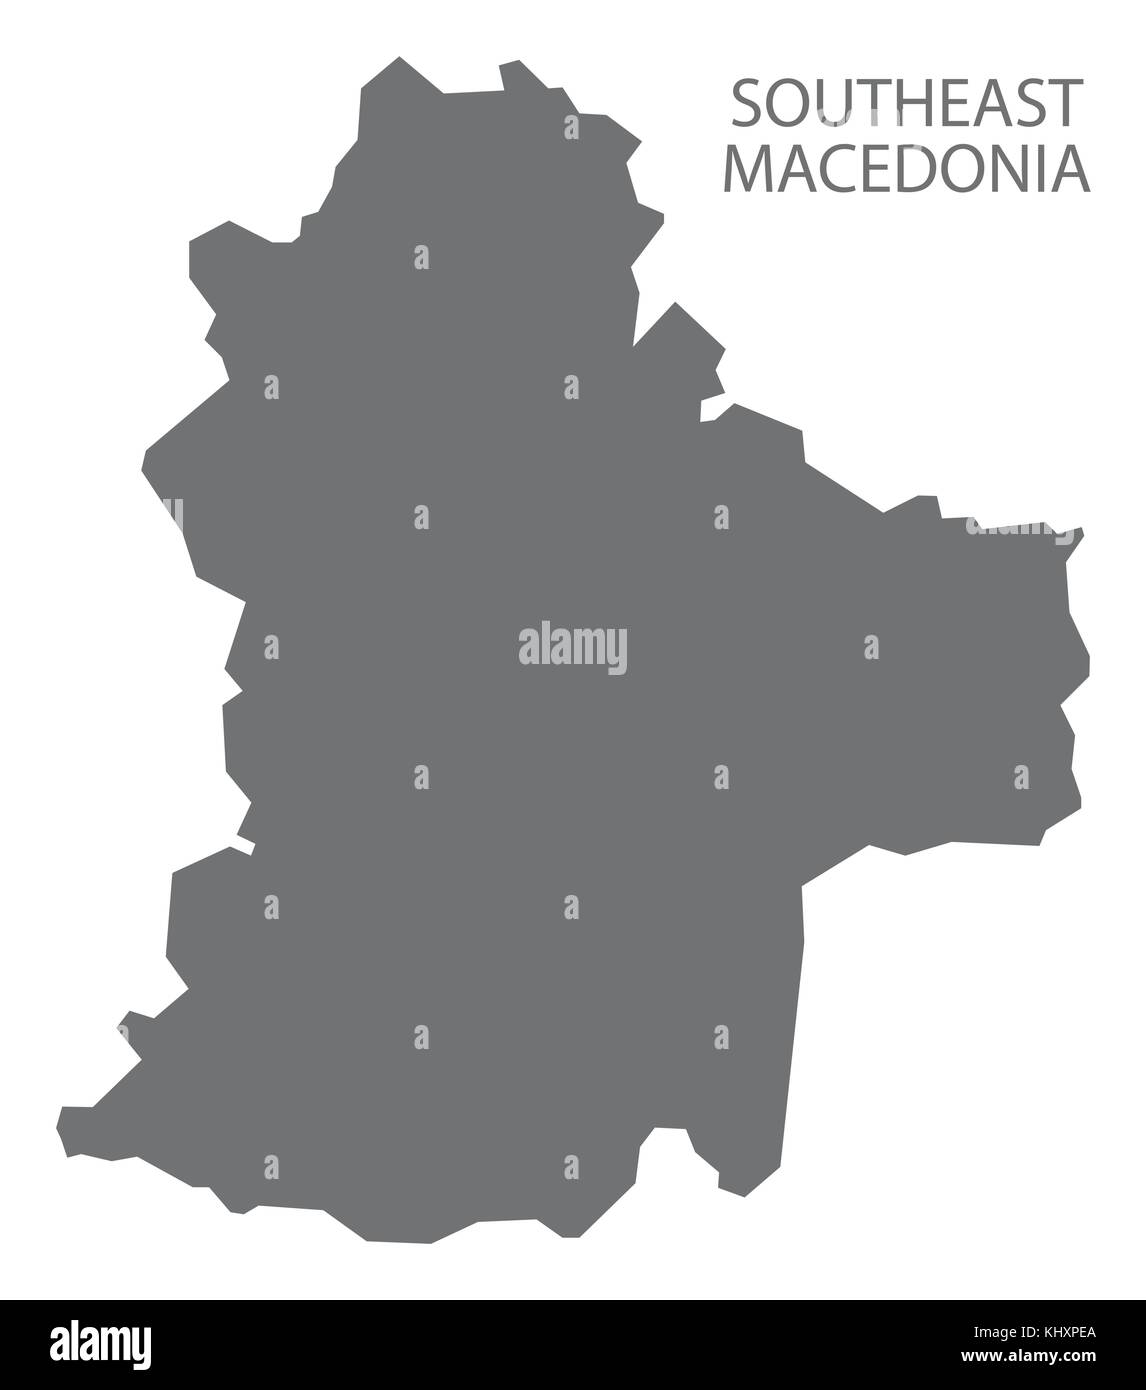 Südosten Mazedonien Karte von Mazedonien Grau Abbildung silhouette Form Stock Vektor